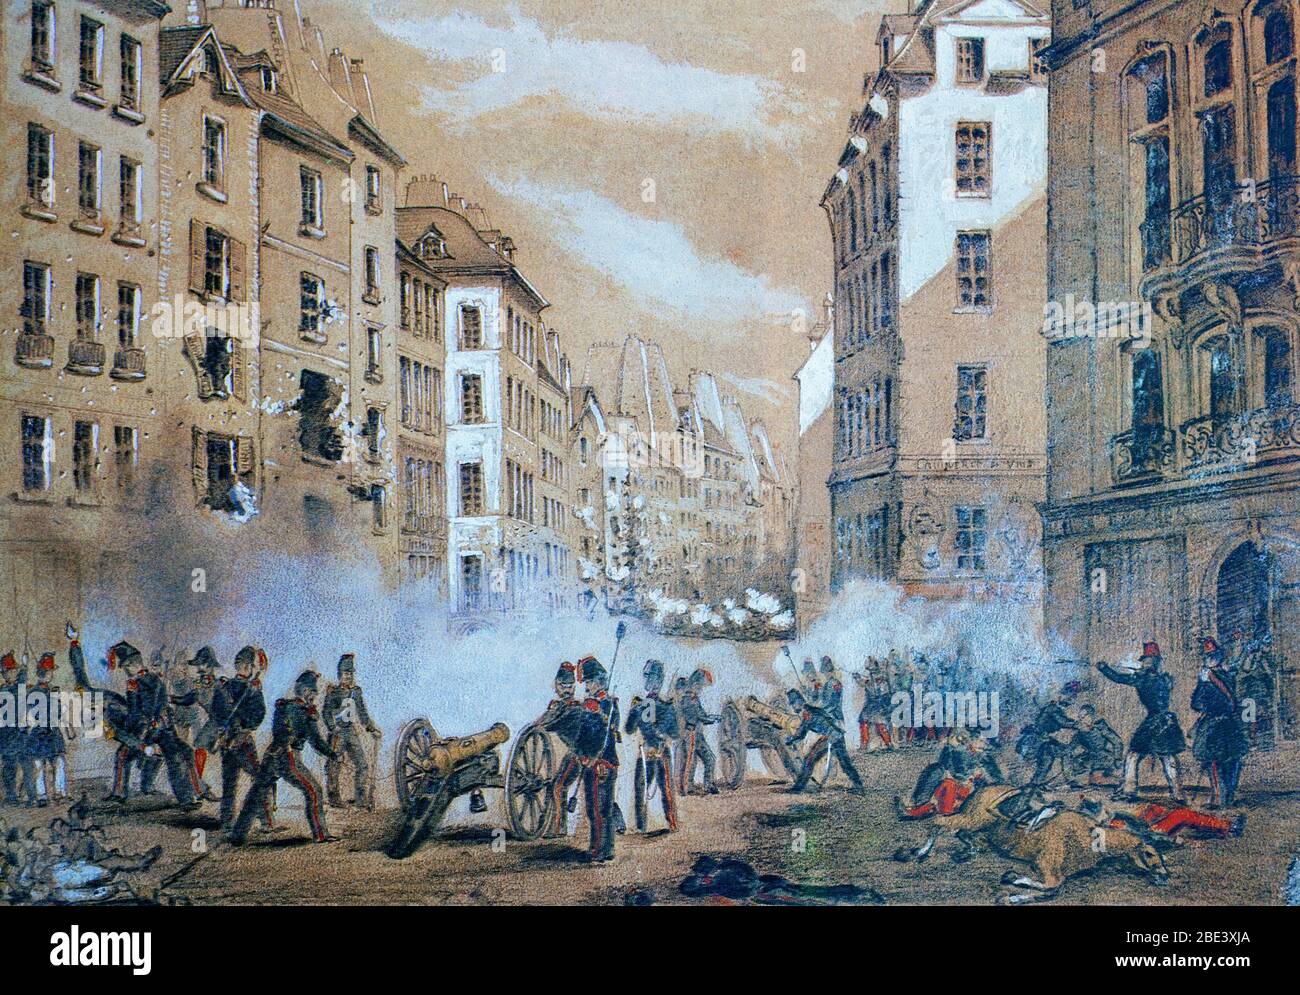 L'armée attaque une barricade dans la rue St Antoine le 23 juin 1848, lorsque le peuple de Paris a pris l'insurrection, connue sous le nom de soulèvement de juin, une rébellion sanglante